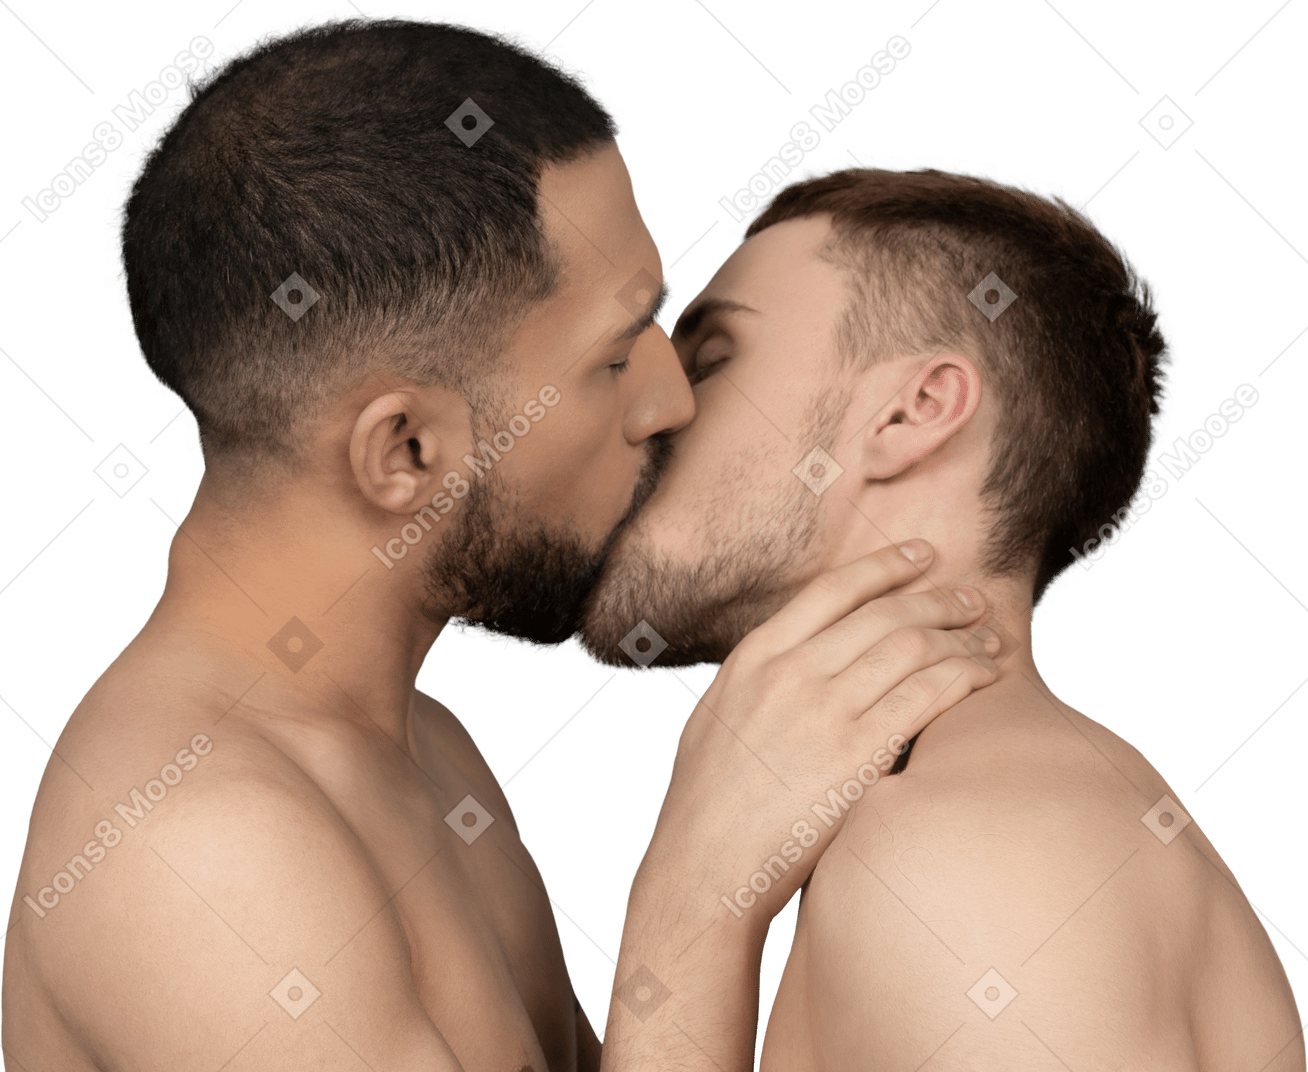 부드럽게 키스하는 두 벗은 백인 남자의 근접